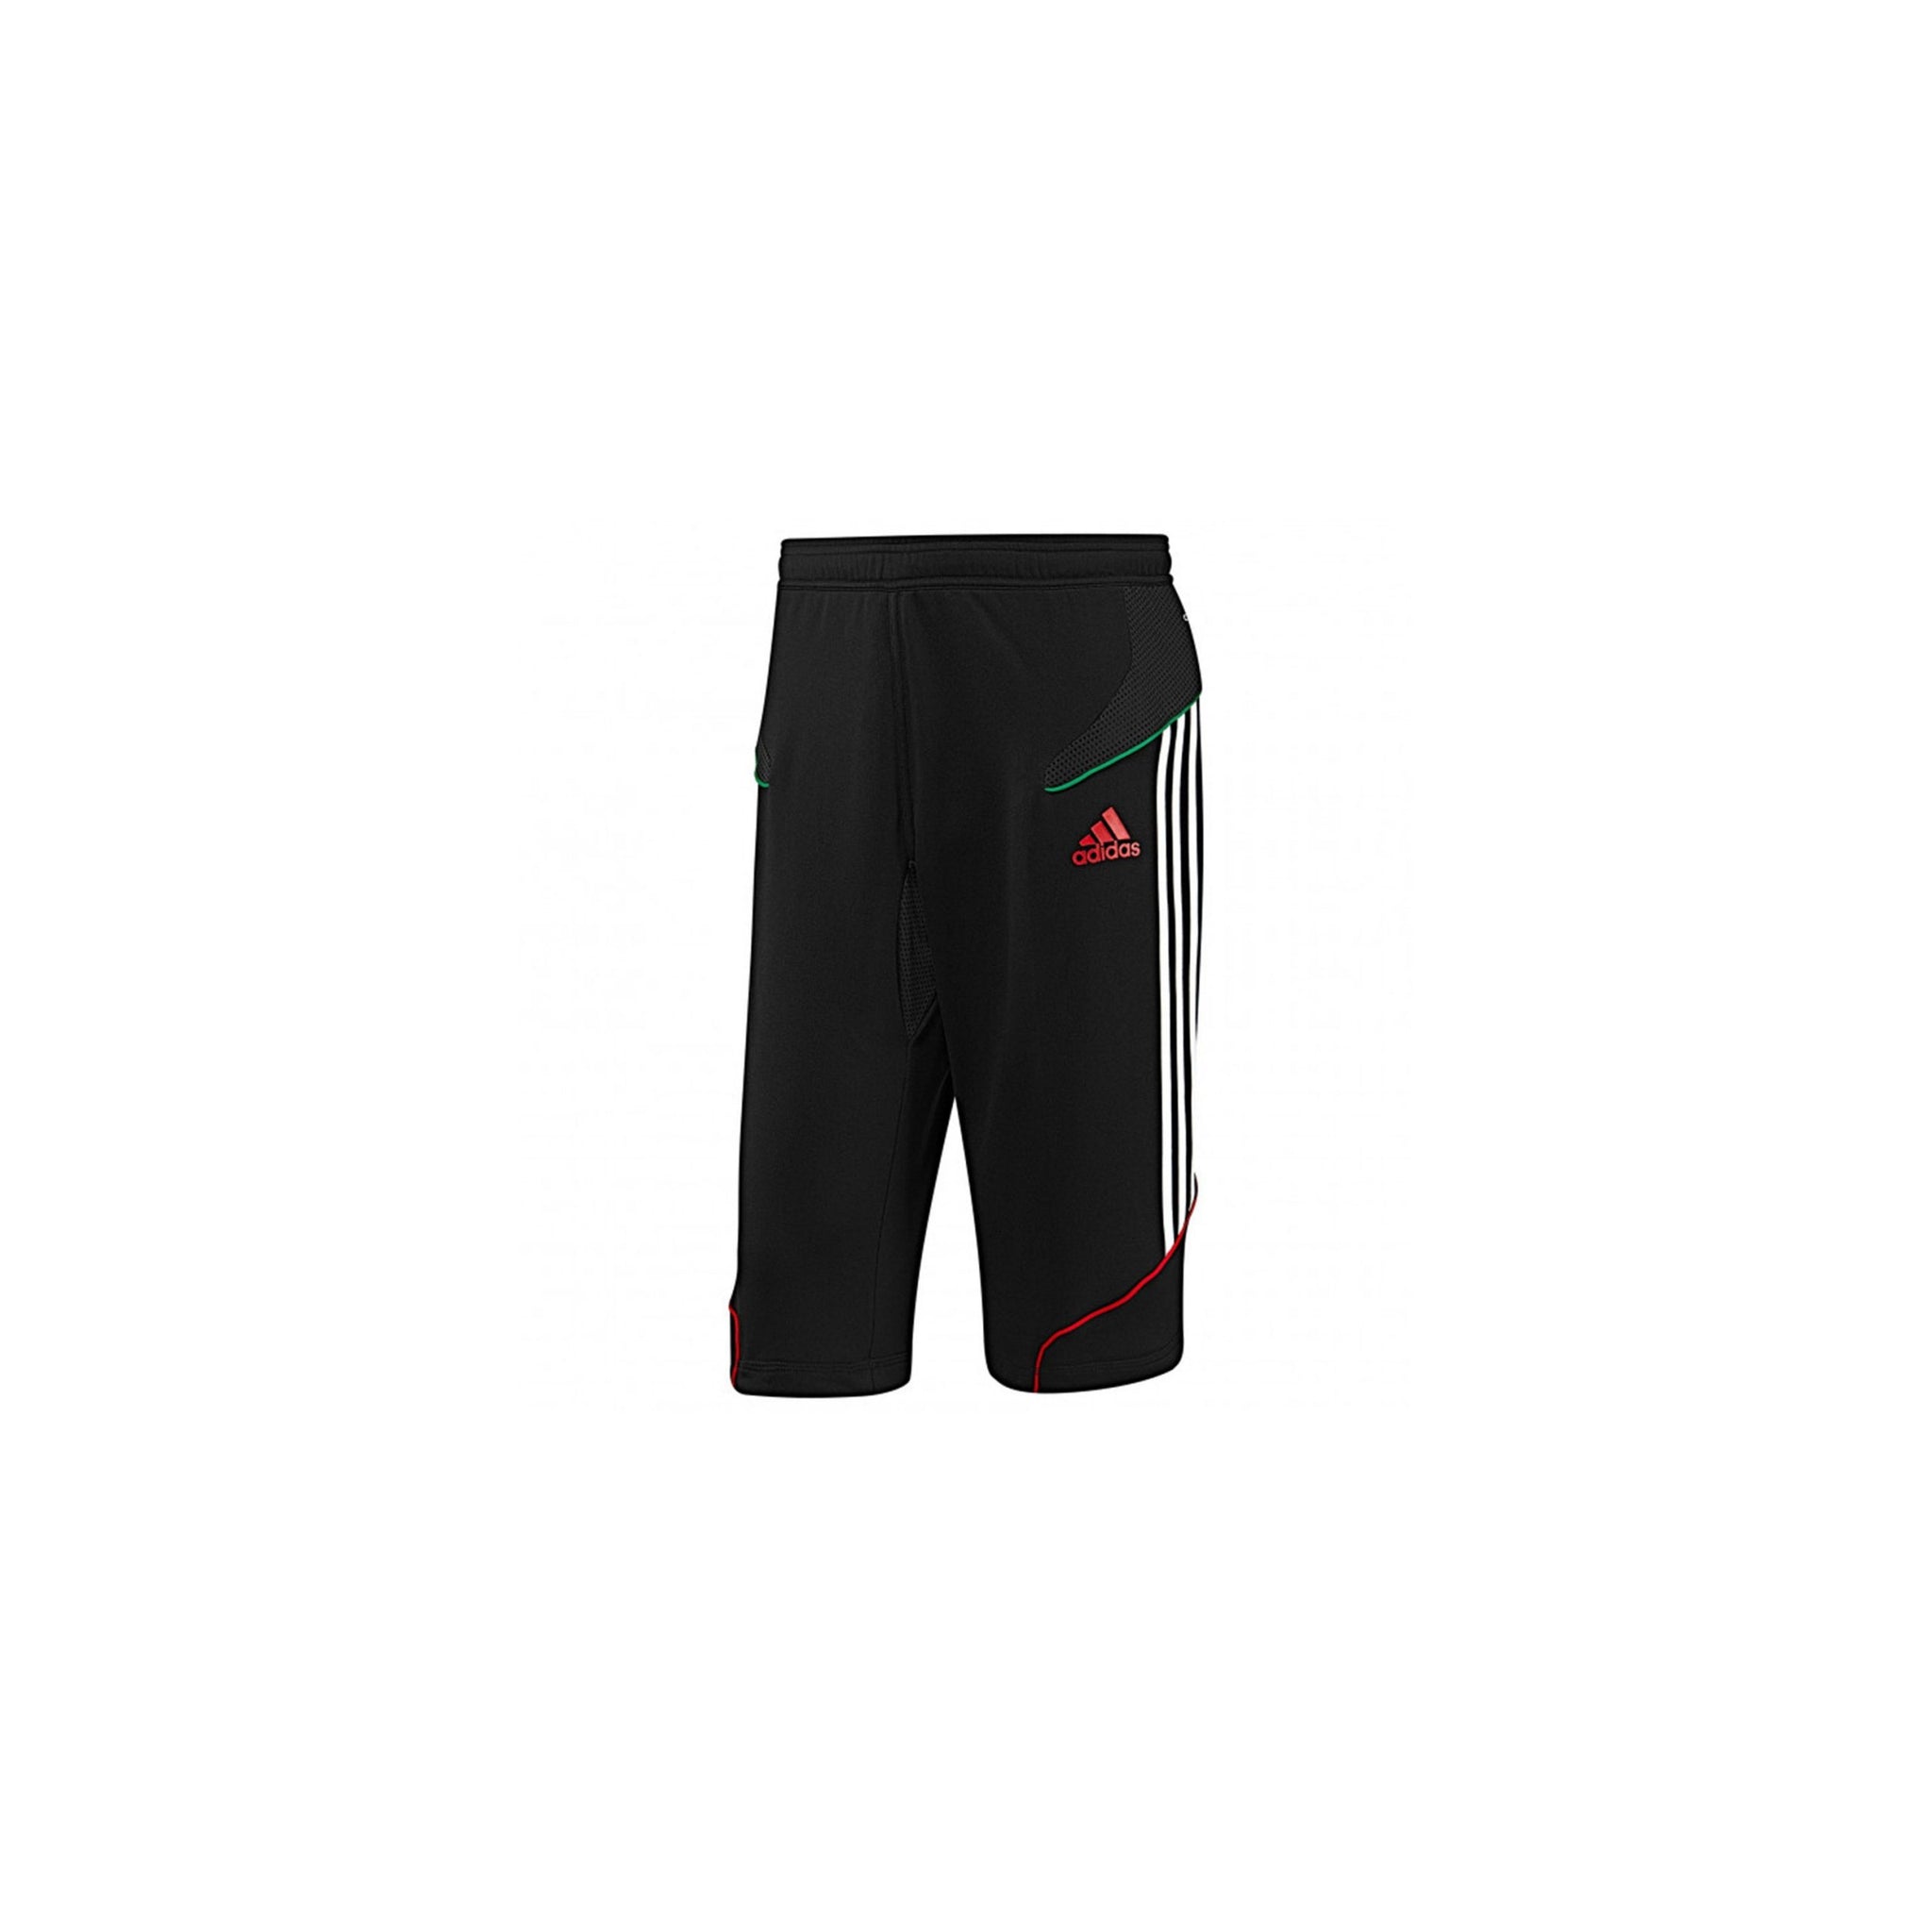 Amazon.com: adidas Youth Soccer Tiro 17 3/4 Pants, Black/White, Large :  Clothing, Shoes & Jewelry